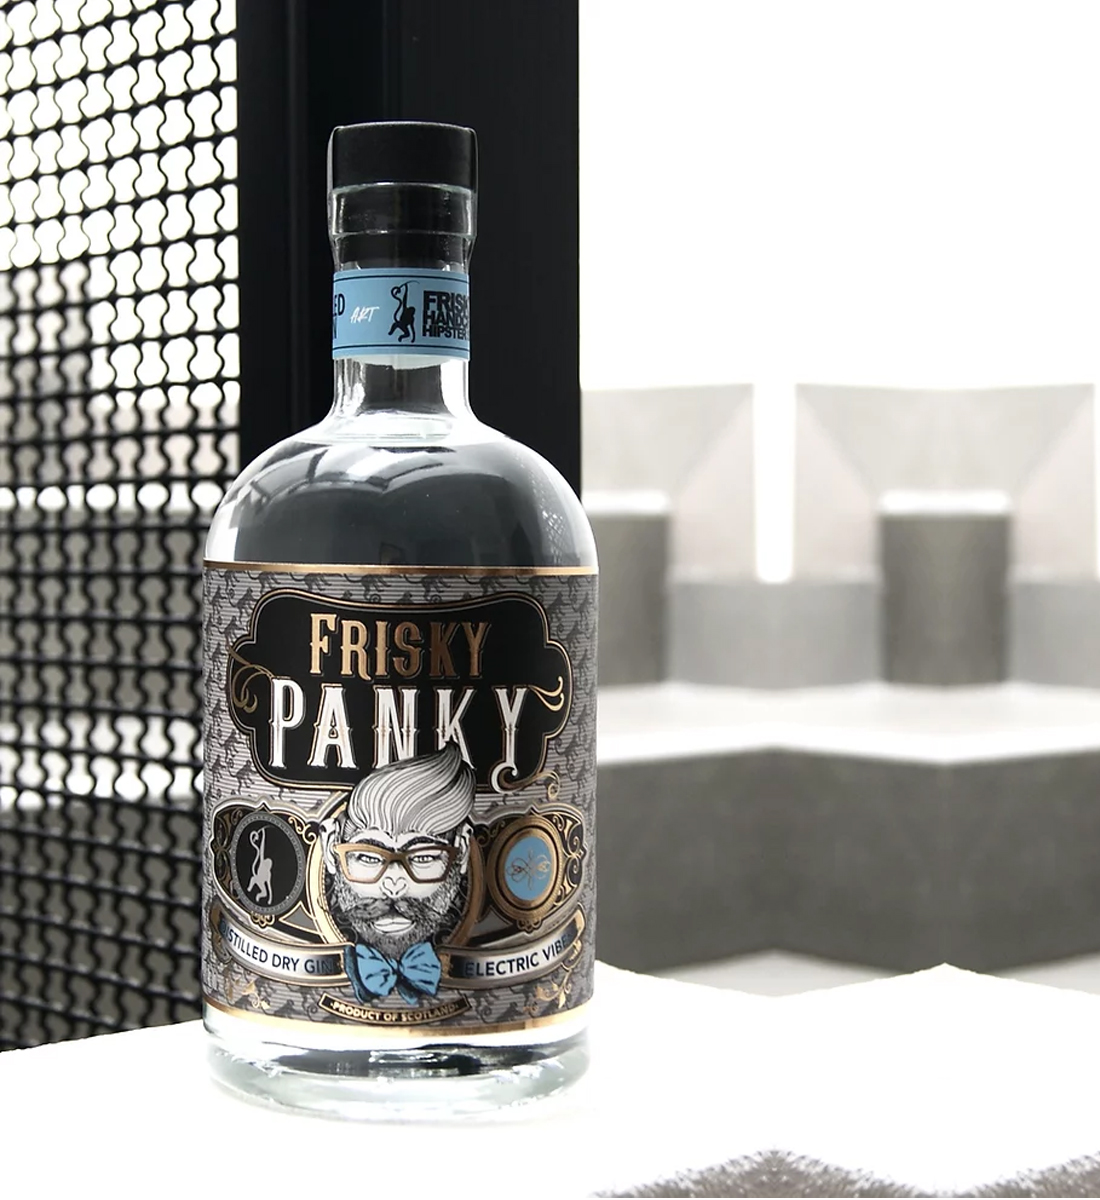 Frisky Panky Scottish Dry Gin 0.7L